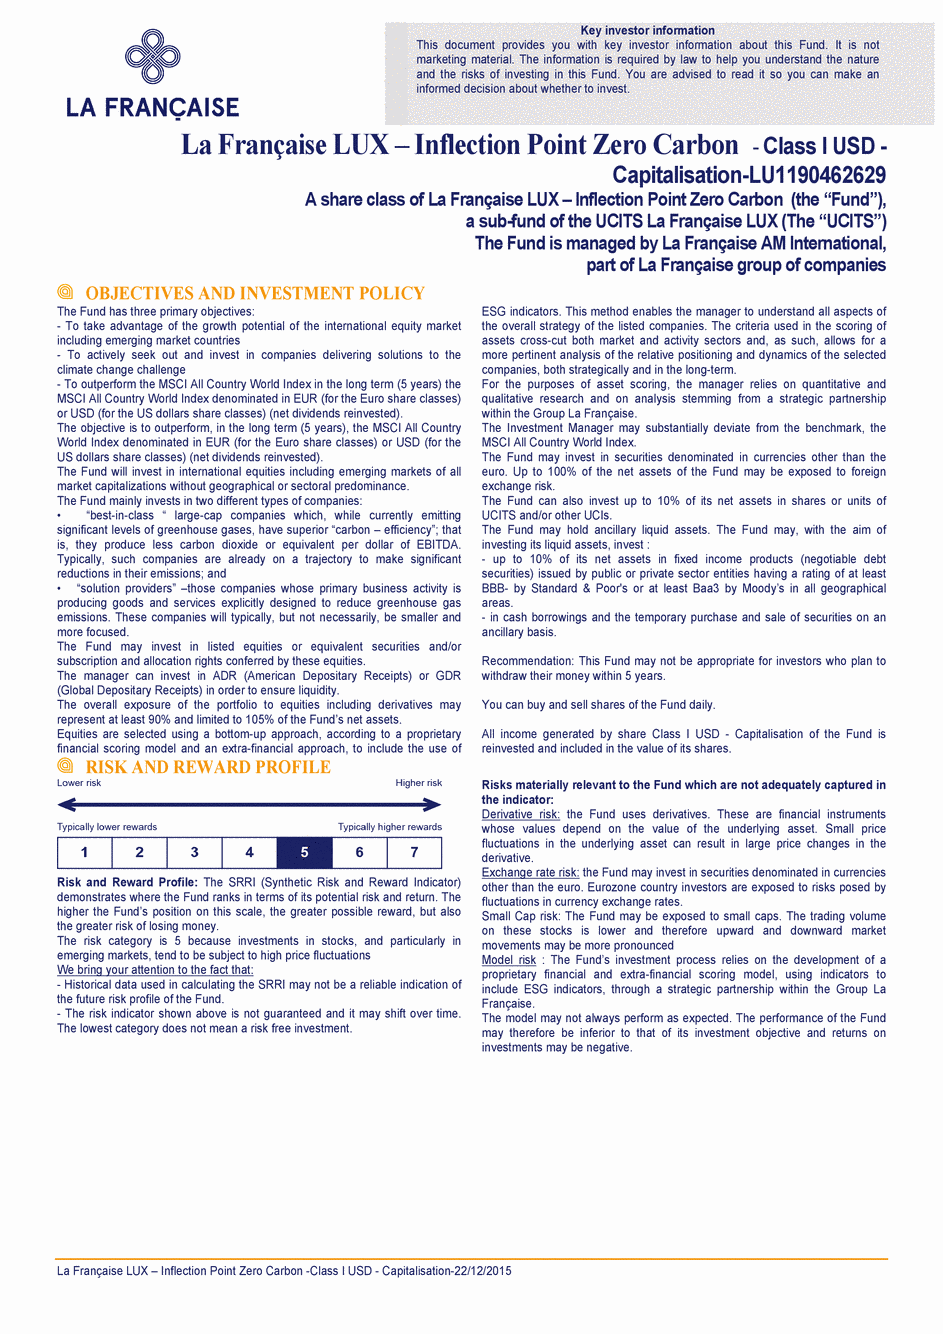 DICI La Française LUX - Inflection Point Carbon Impact Global - Class I USD - 22/12/2015 - Anglais